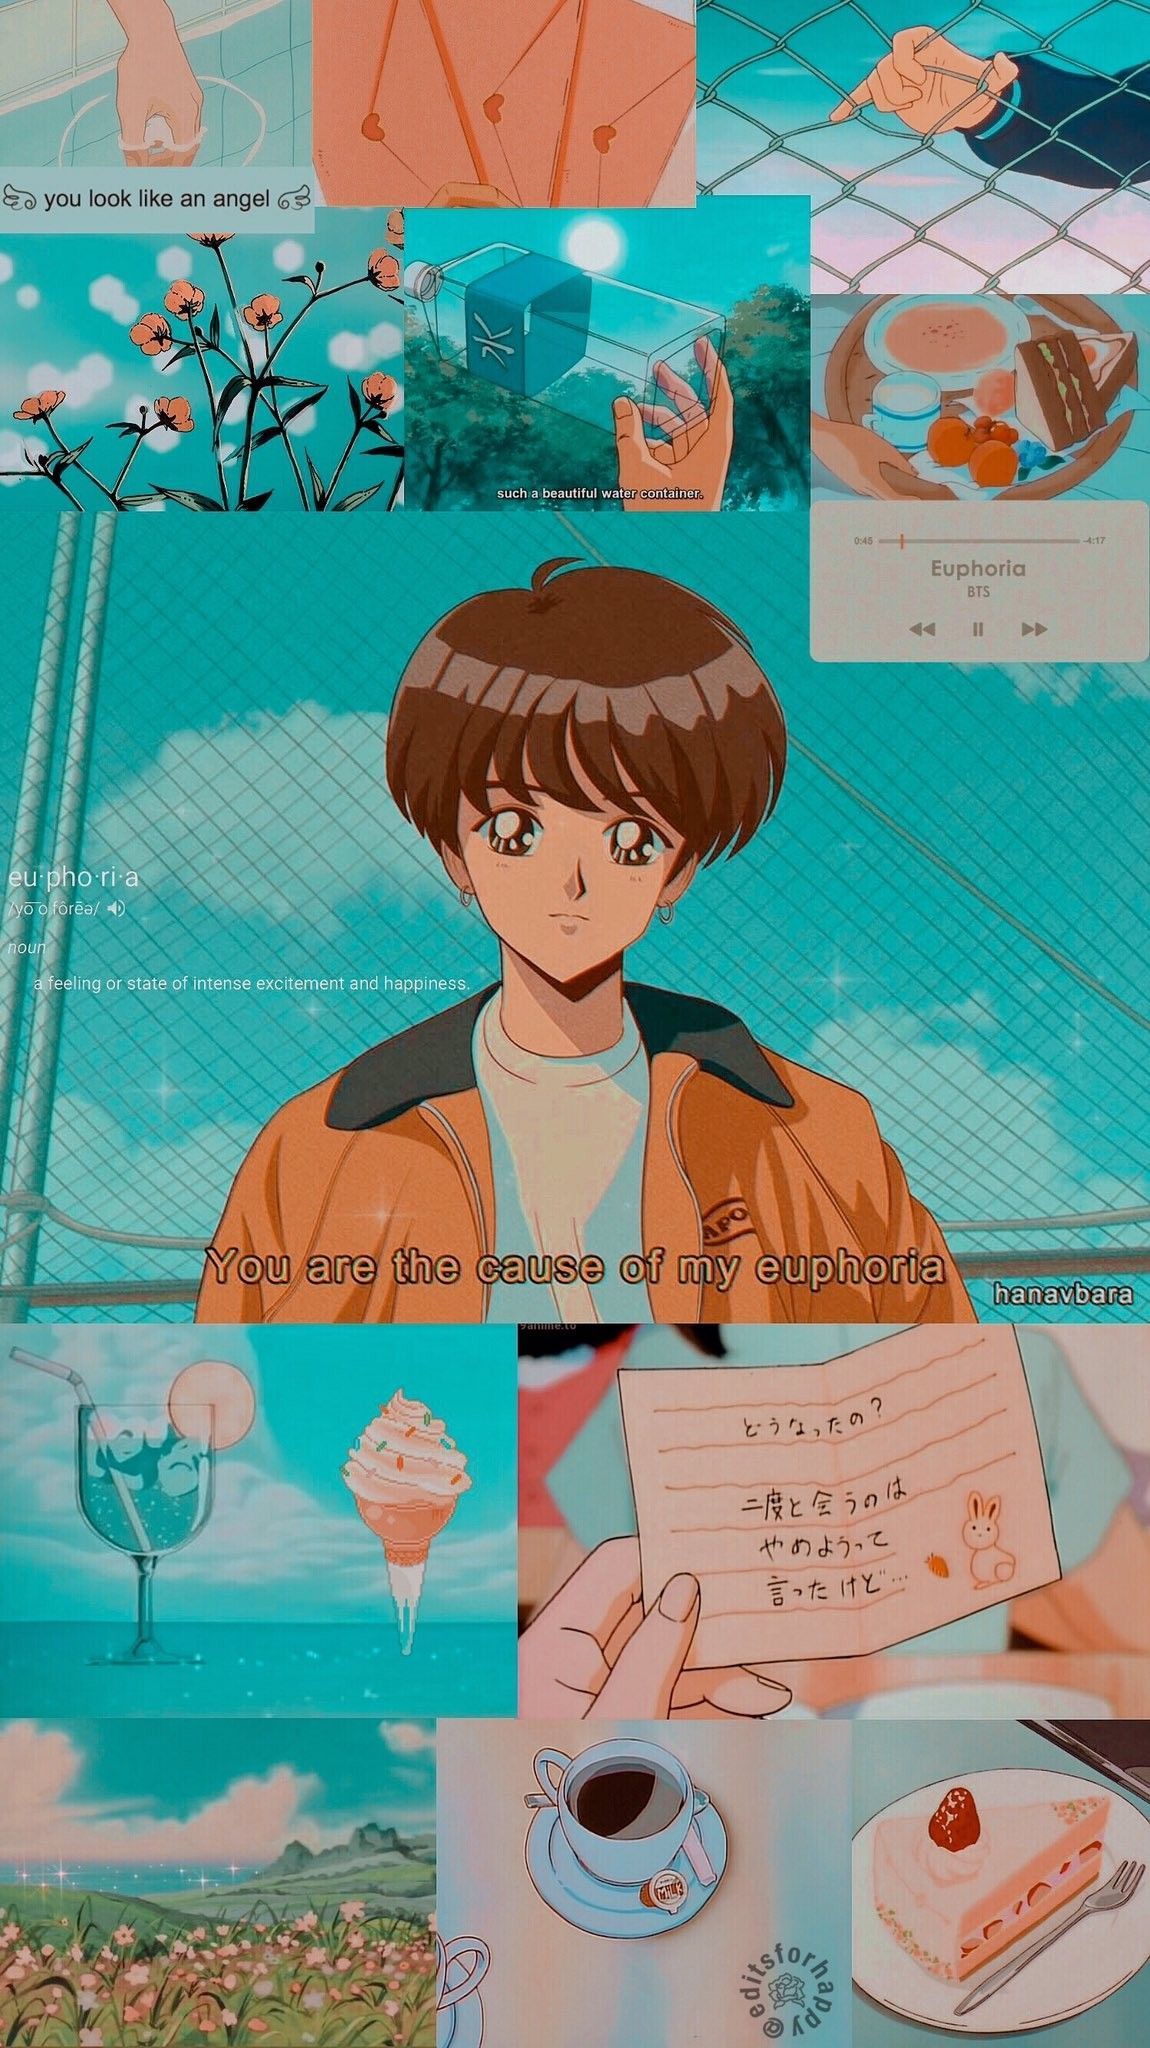 Anime 90S Retro Wallpapers